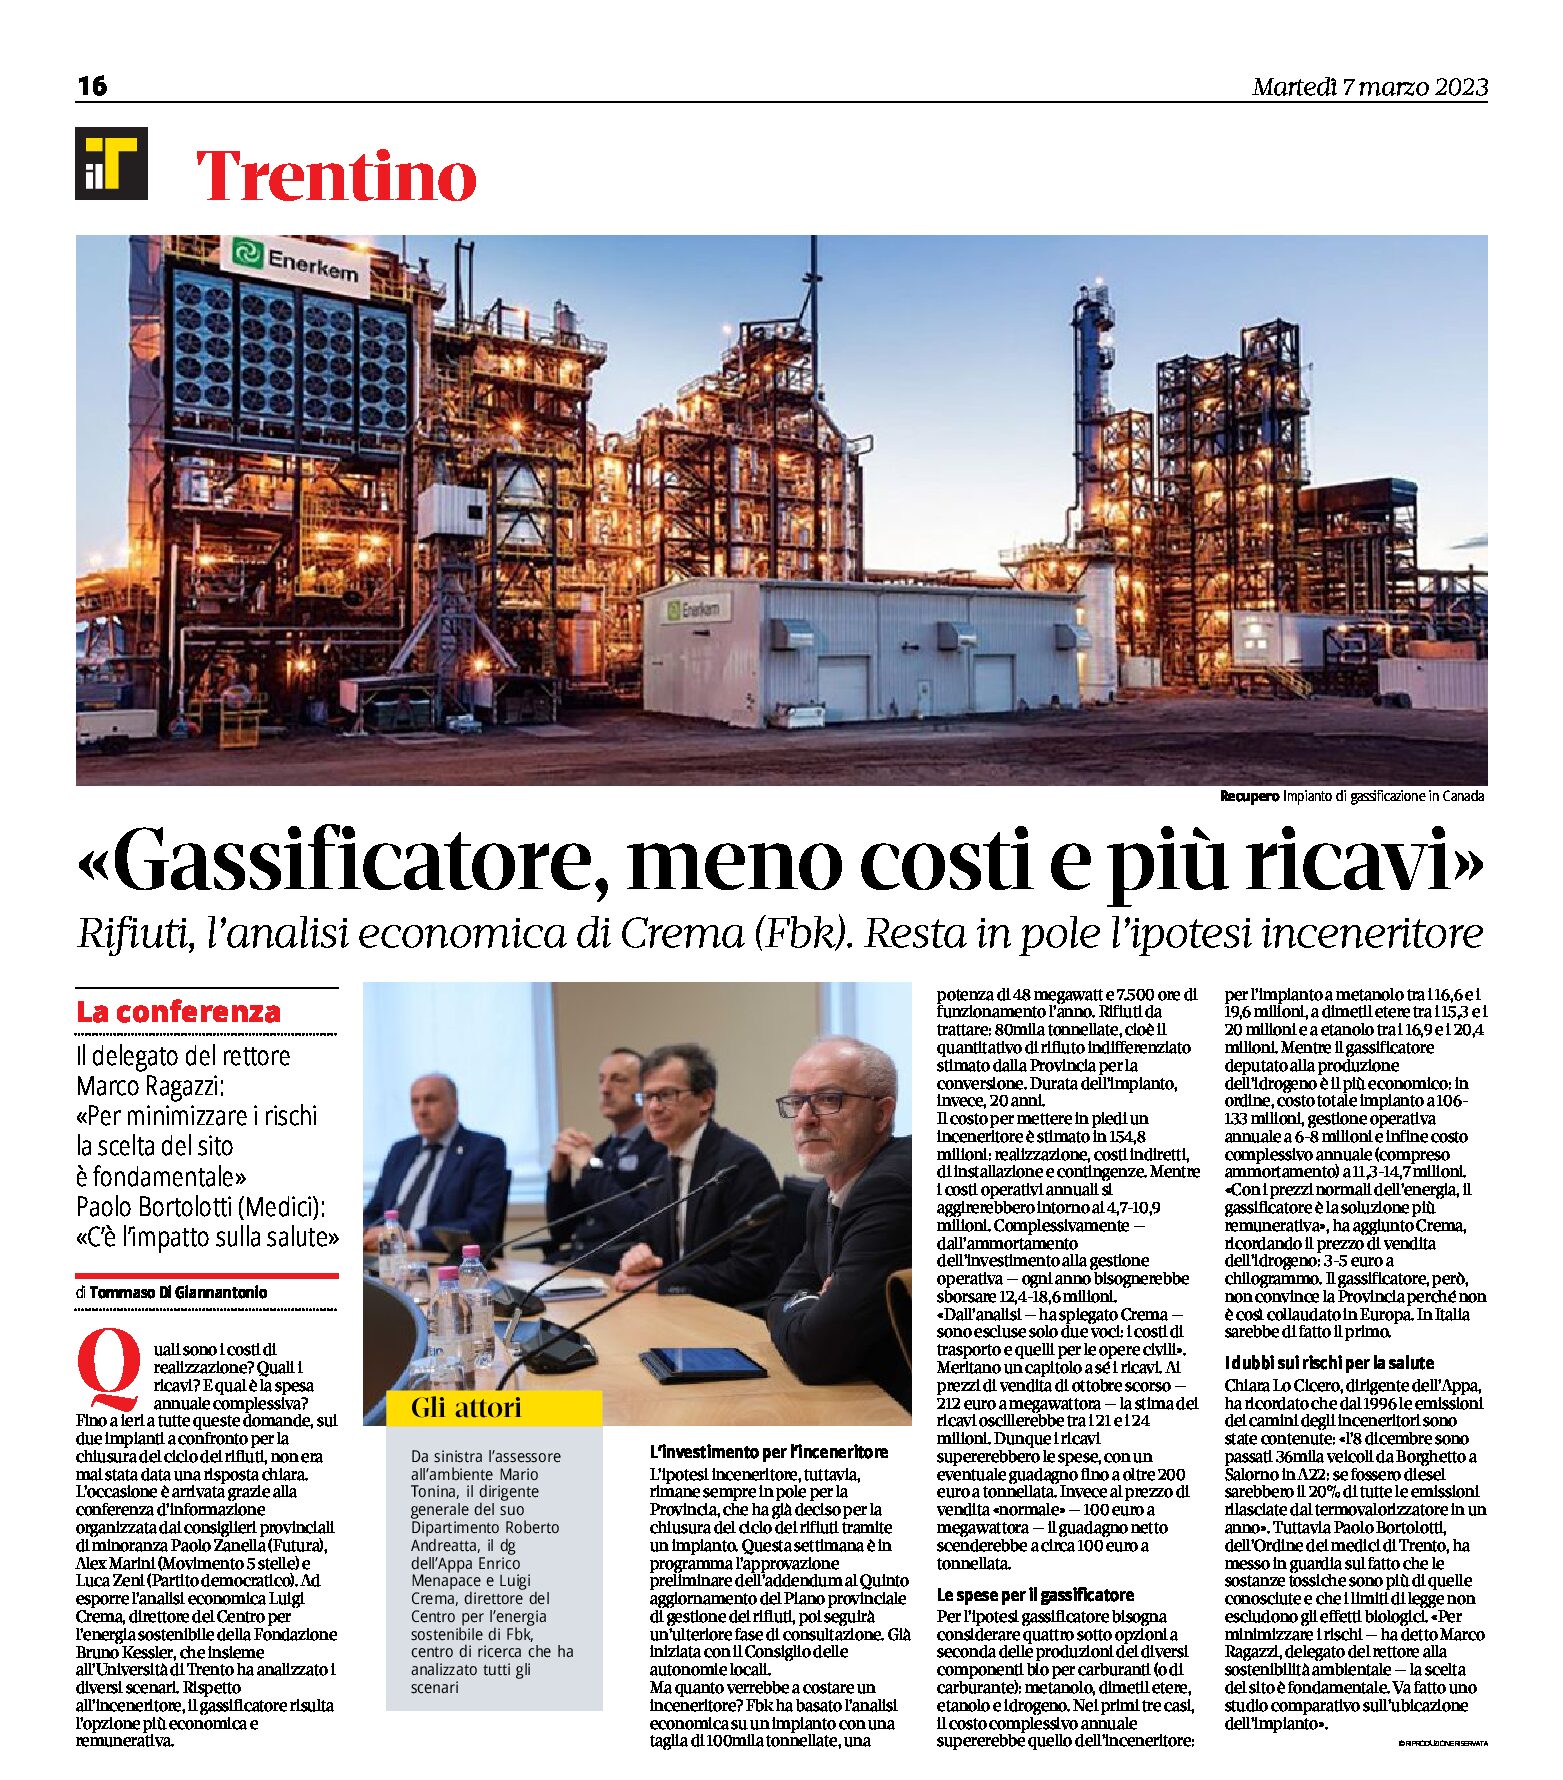 Trentino, gassificatore: meno costi e più ricavi. Analisi economica di Crema (Fbk)